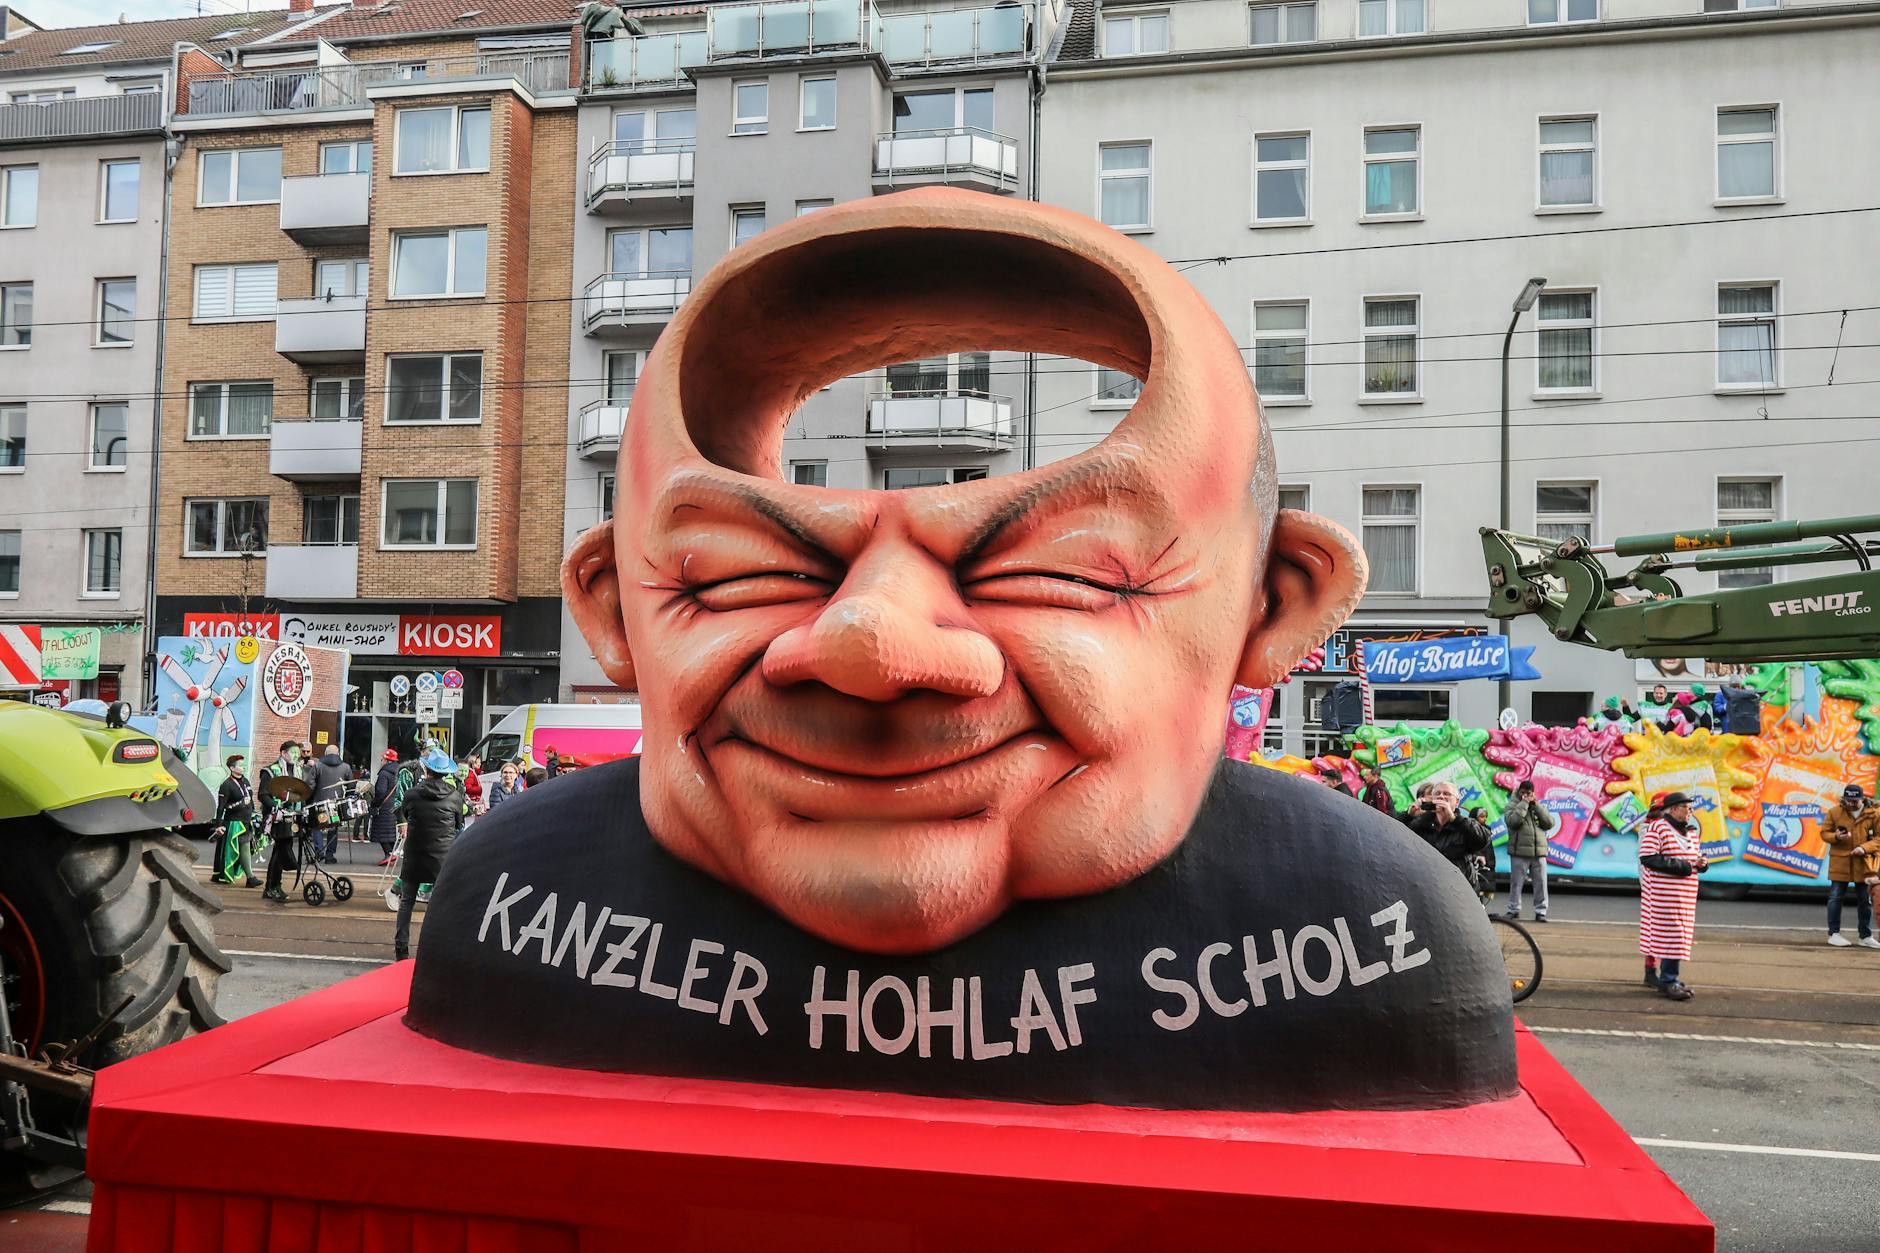 Bundeskanzler Olaf Scholz war ein beliebtes Motiv bei den Karnevalswagen. Hier als Hohlaf Scholz verunglimpft, gab es aber noch viele weitere Wagen.